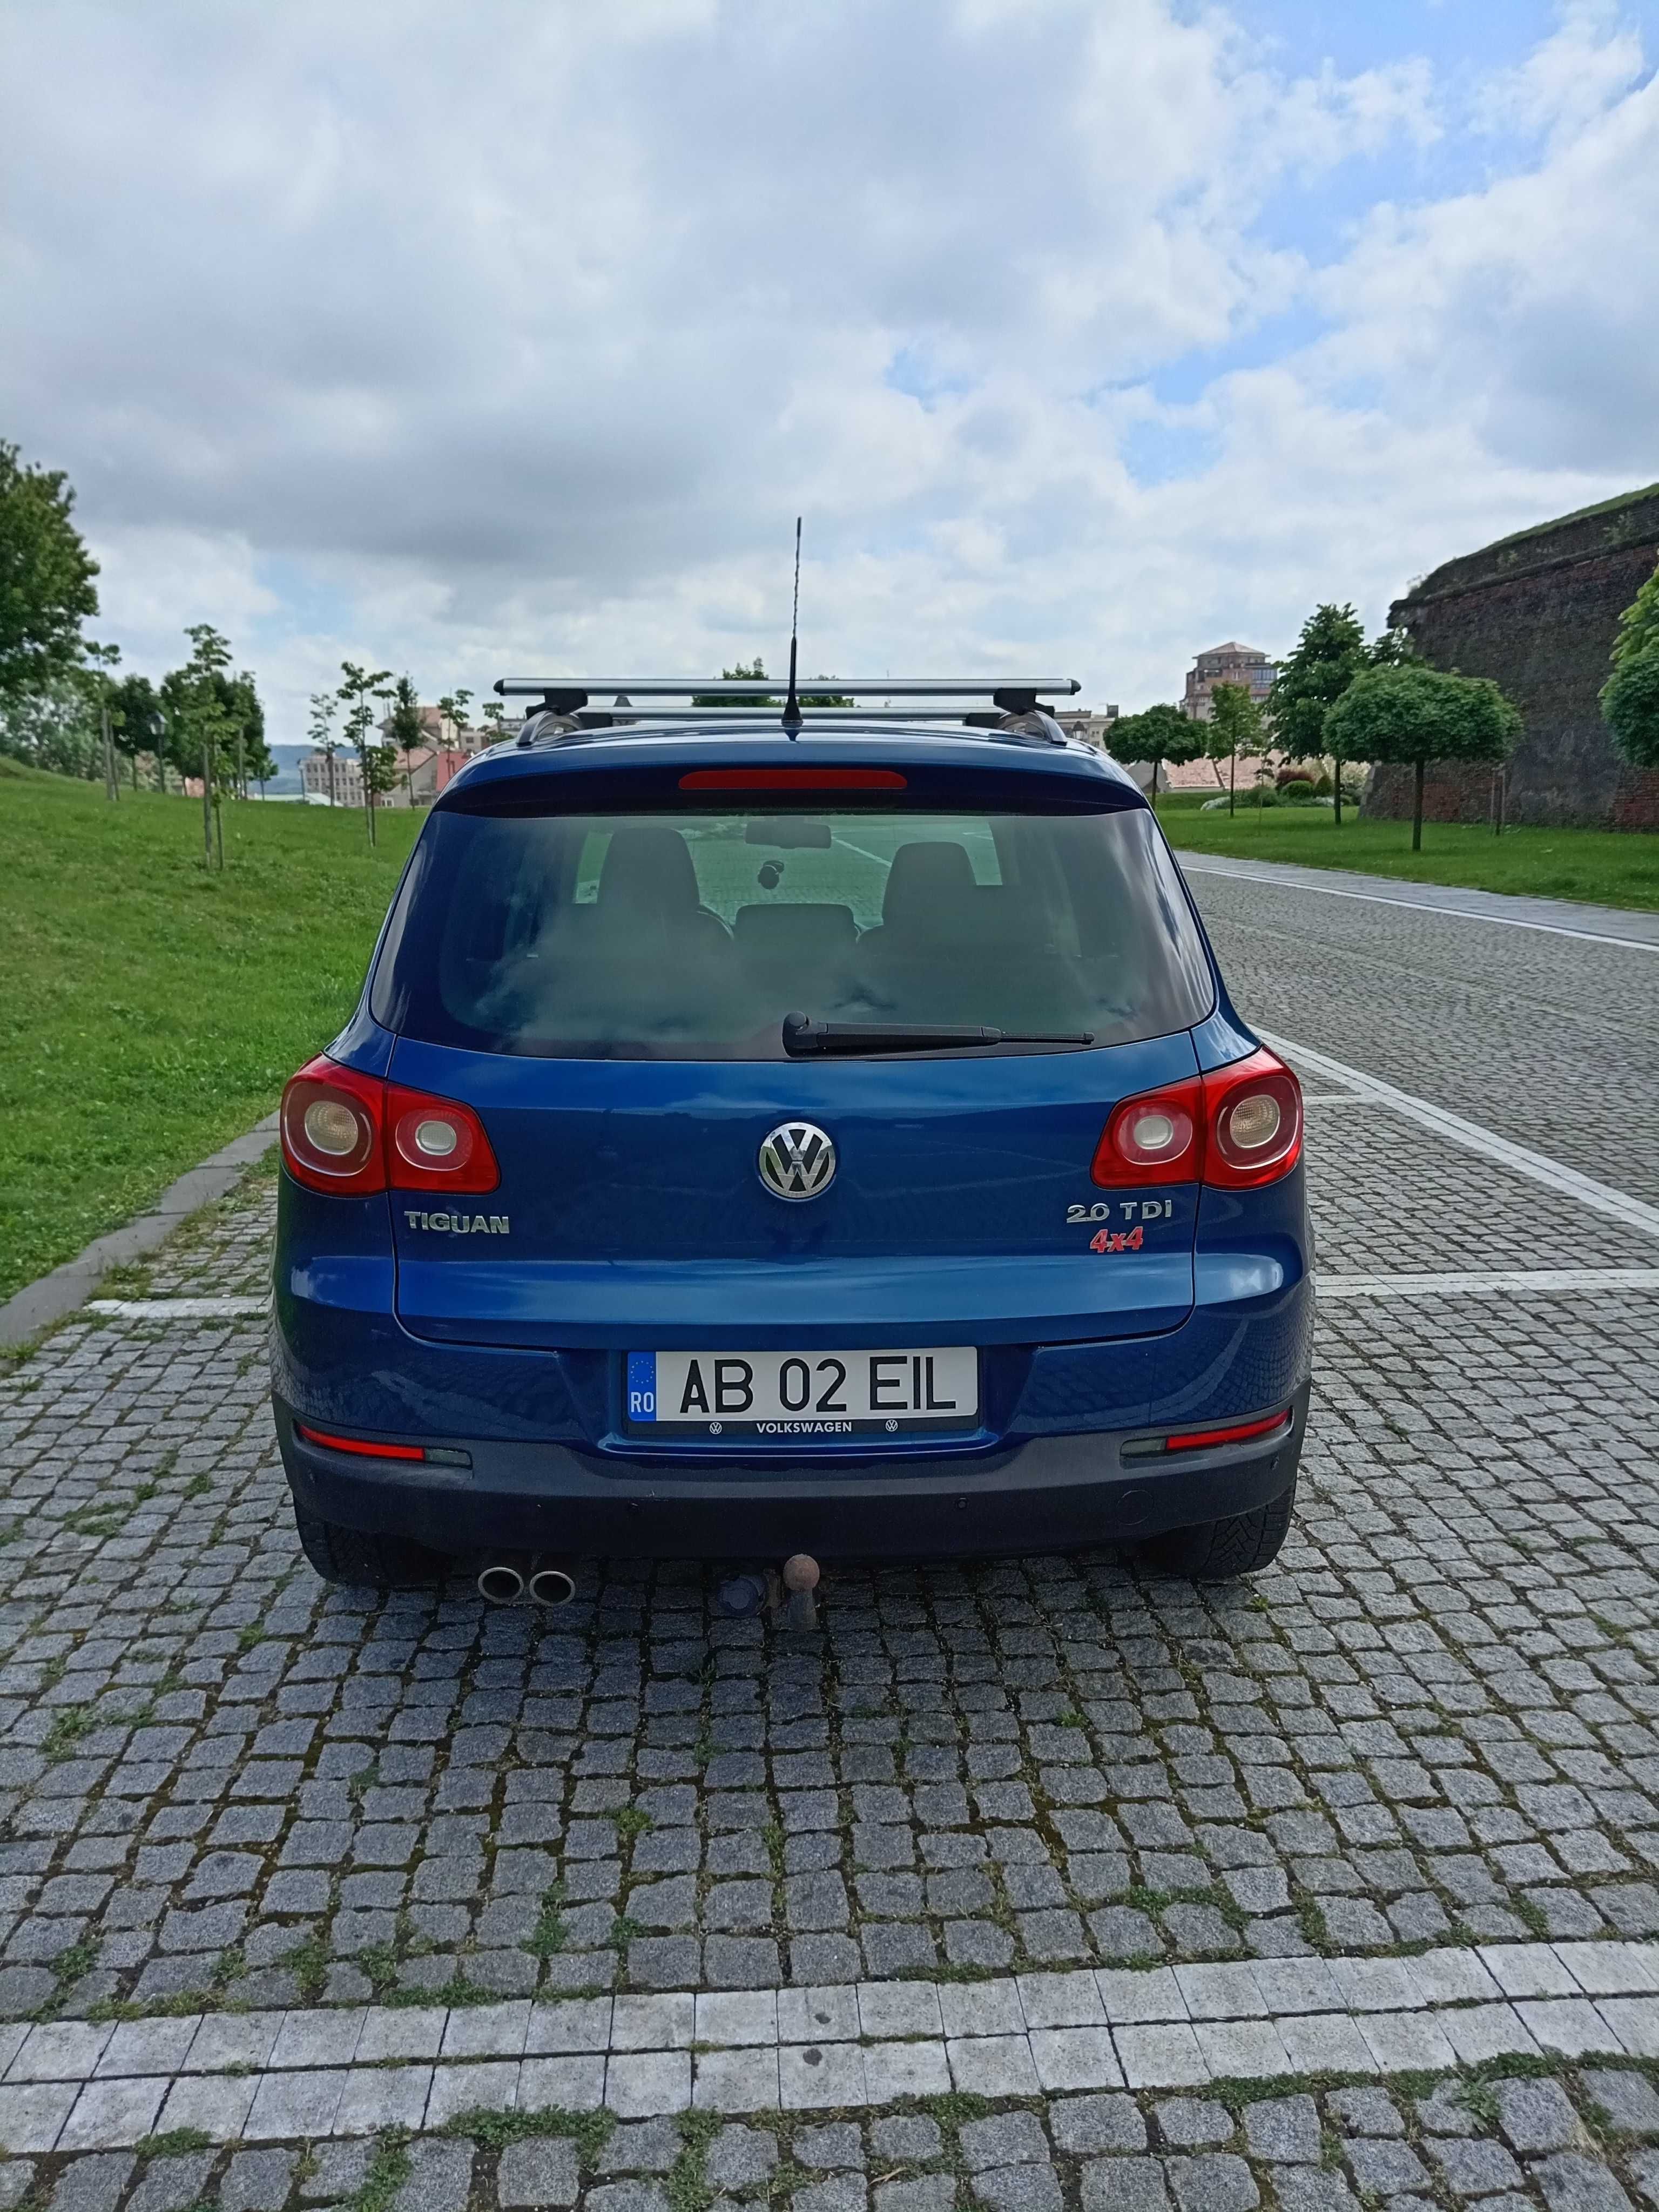 Volkswagen Tiguan 4x4 6500 euro